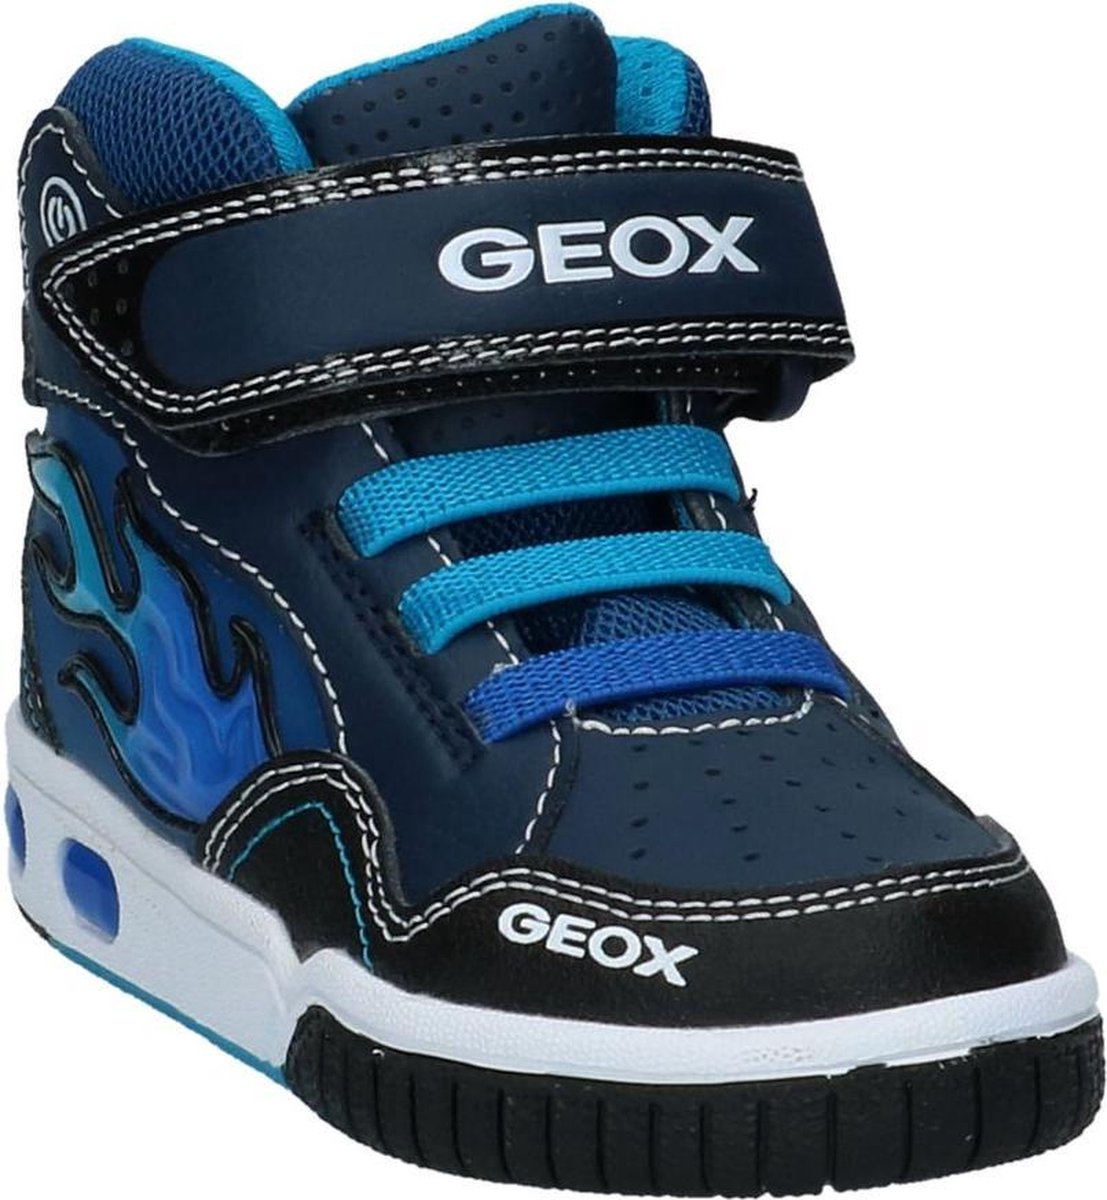 Geox Jongens Sneakers J8447c - Blauw - Maat 35 | bol.com